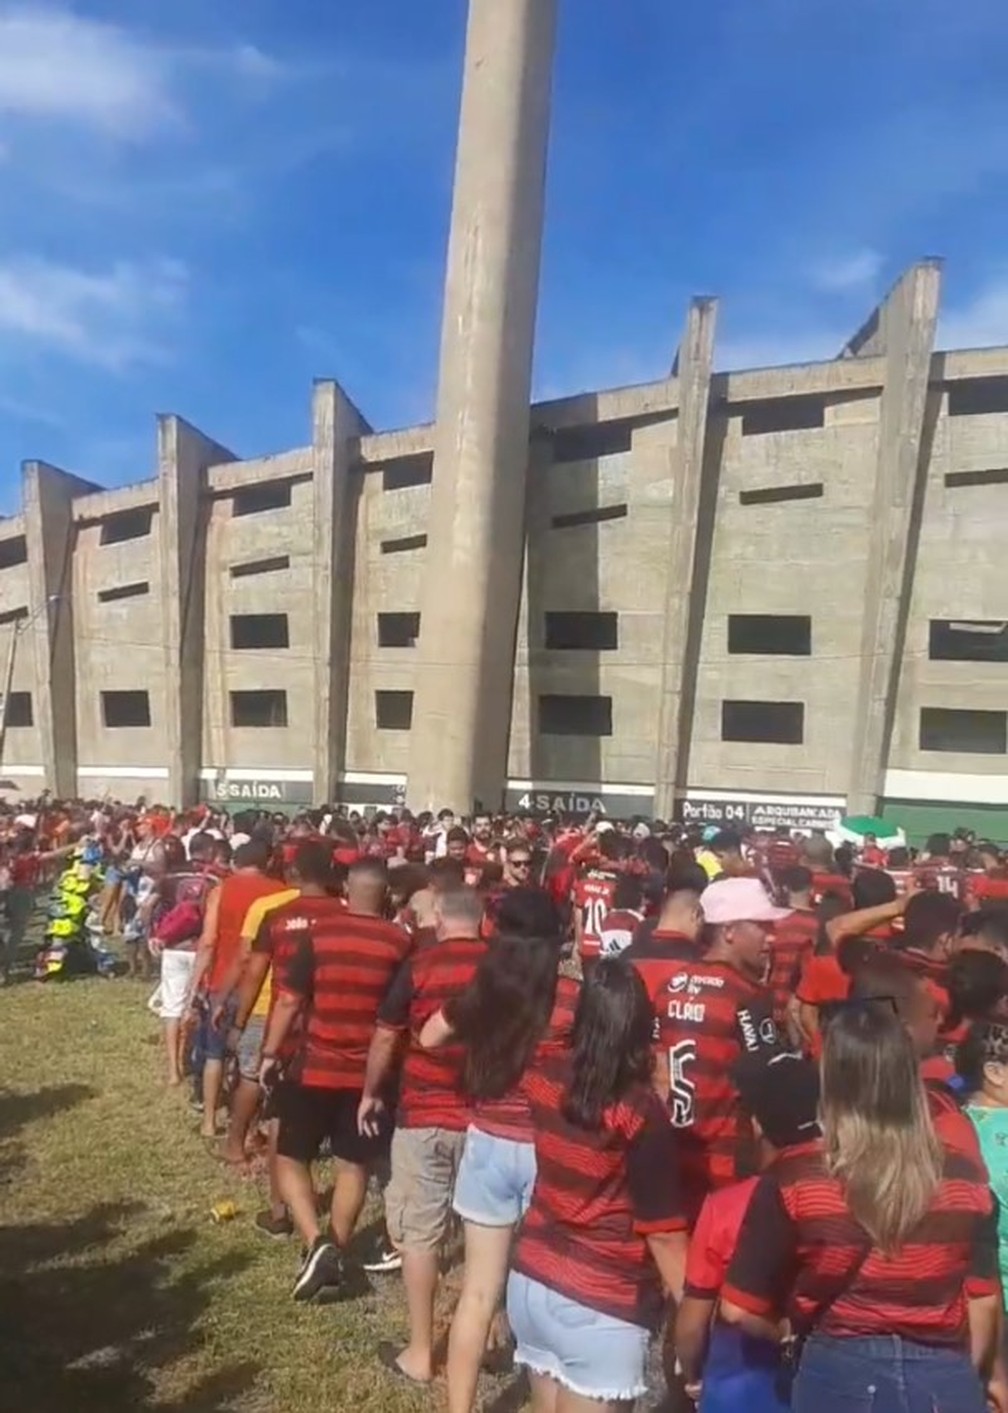 Torcedores do Flamengo no Albertão, Altos x Flamengo  — Foto: @aurisson